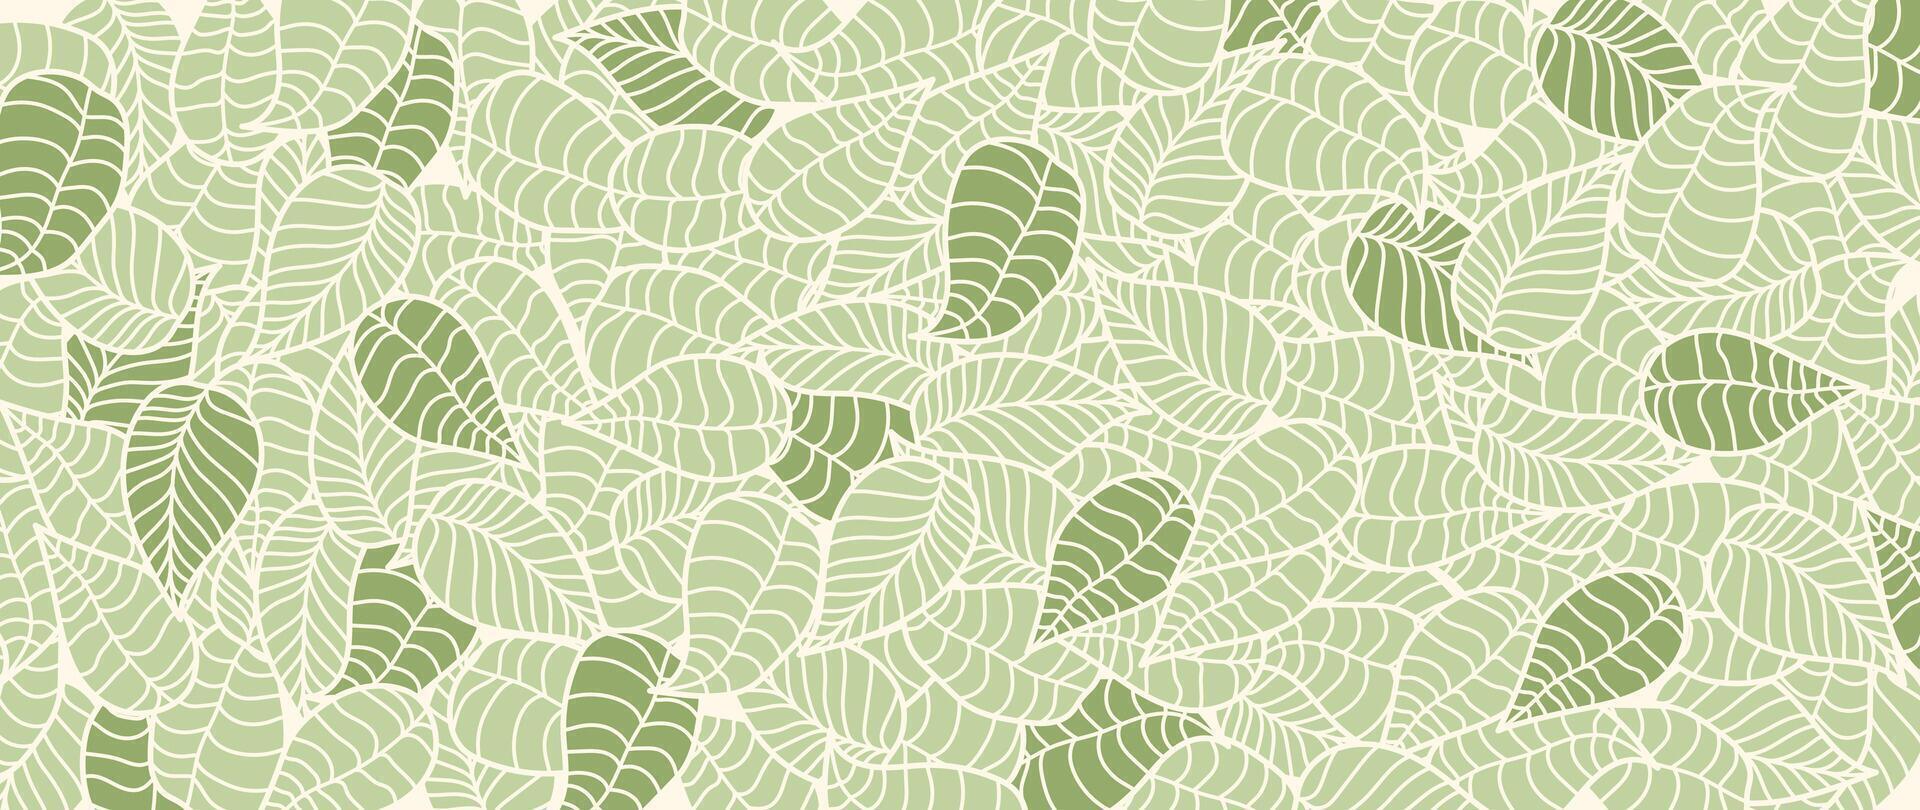 abstract gebladerte botanisch achtergrond . groen kleur behang van tropisch planten, palm bladeren, blad takken, bladeren. gebladerte ontwerp voor banier, afdrukken, decor, muur kunst, decoratie. vector